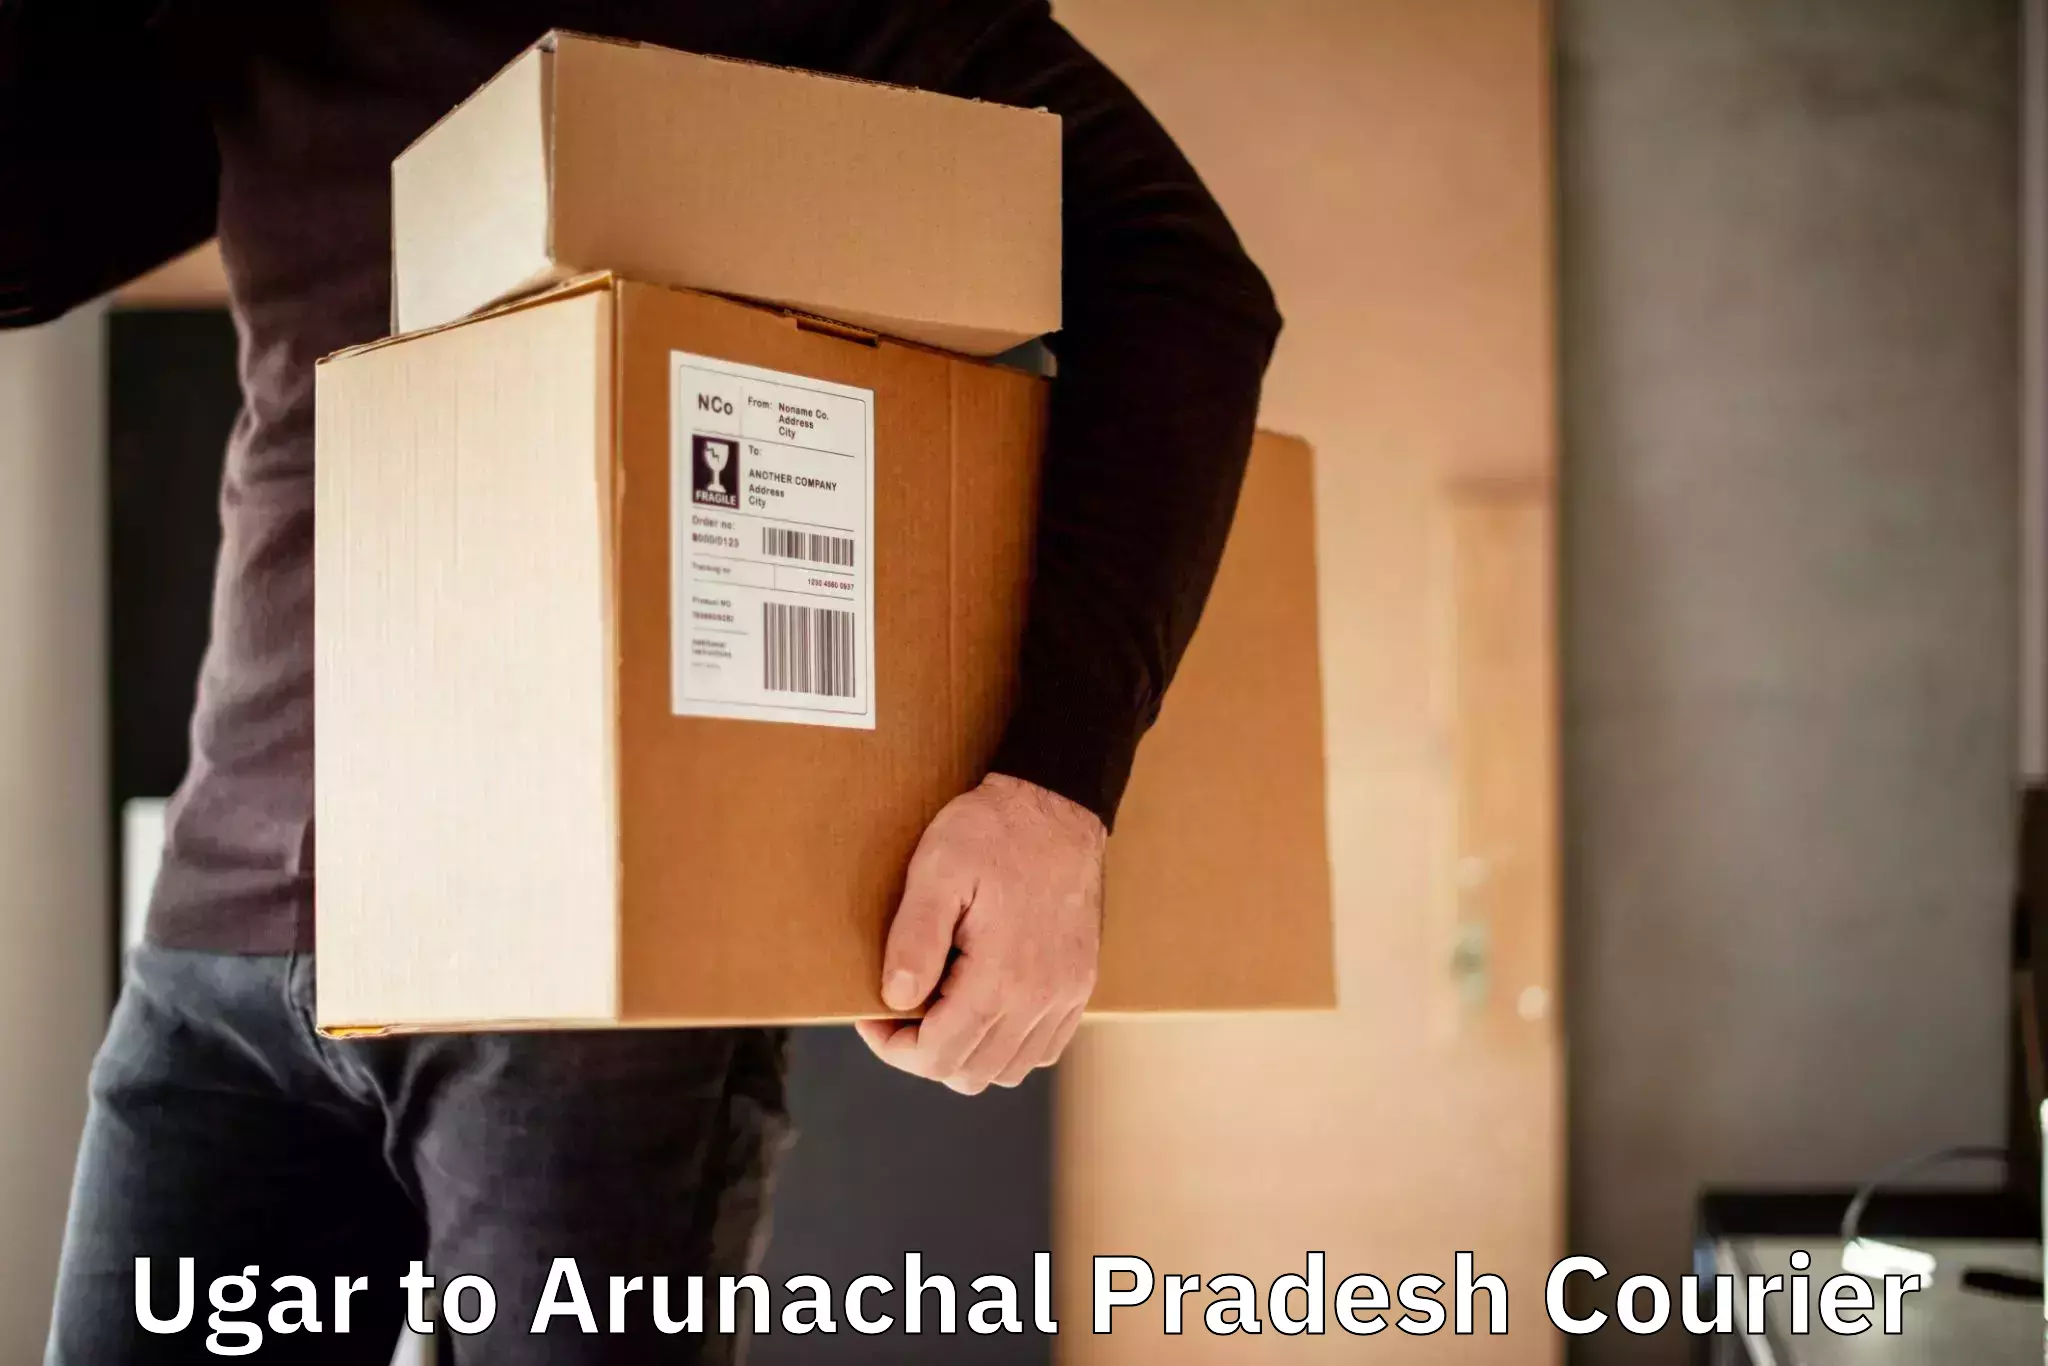 Urgent courier needs Ugar to Arunachal Pradesh